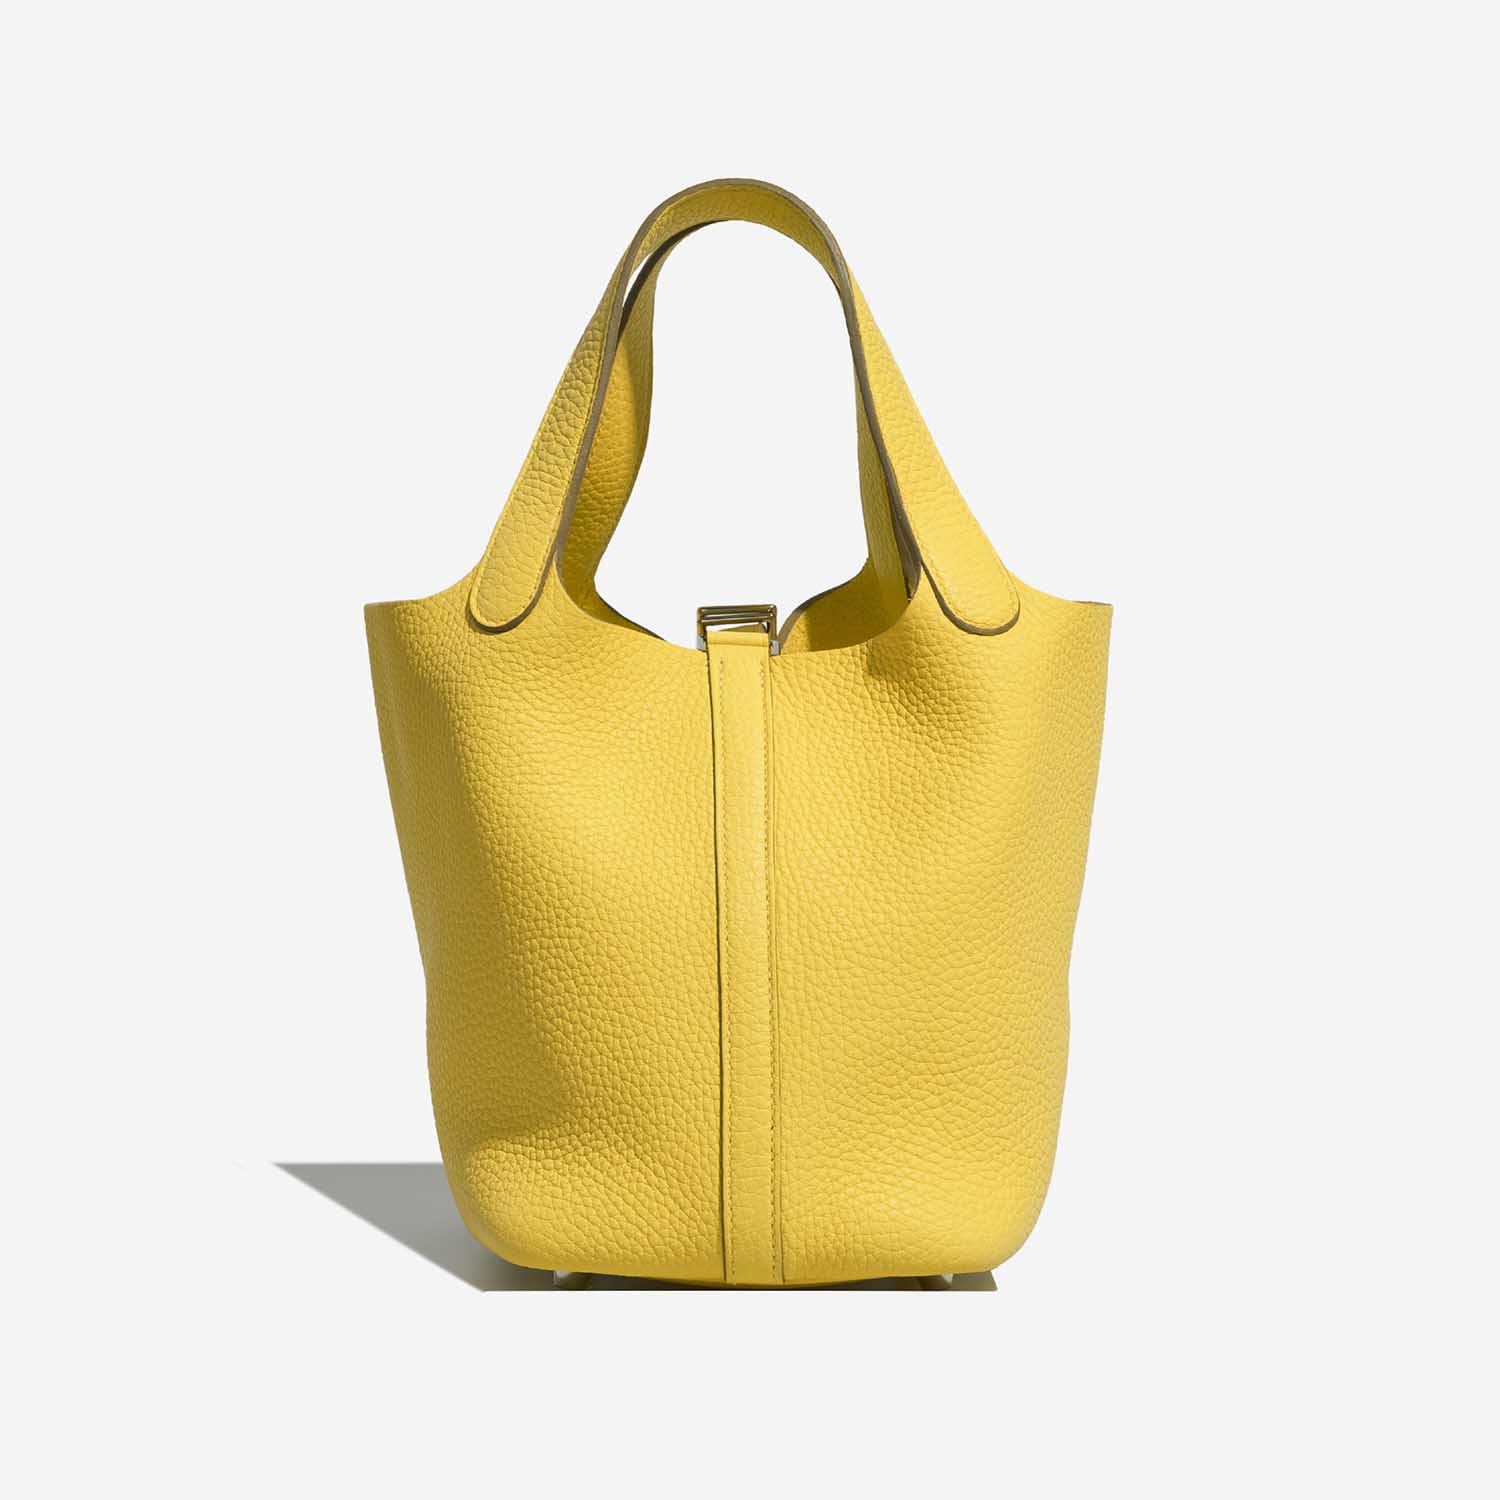 Hermès Picotin 18 Lime Back | Verkaufen Sie Ihre Designer-Tasche auf Saclab.com